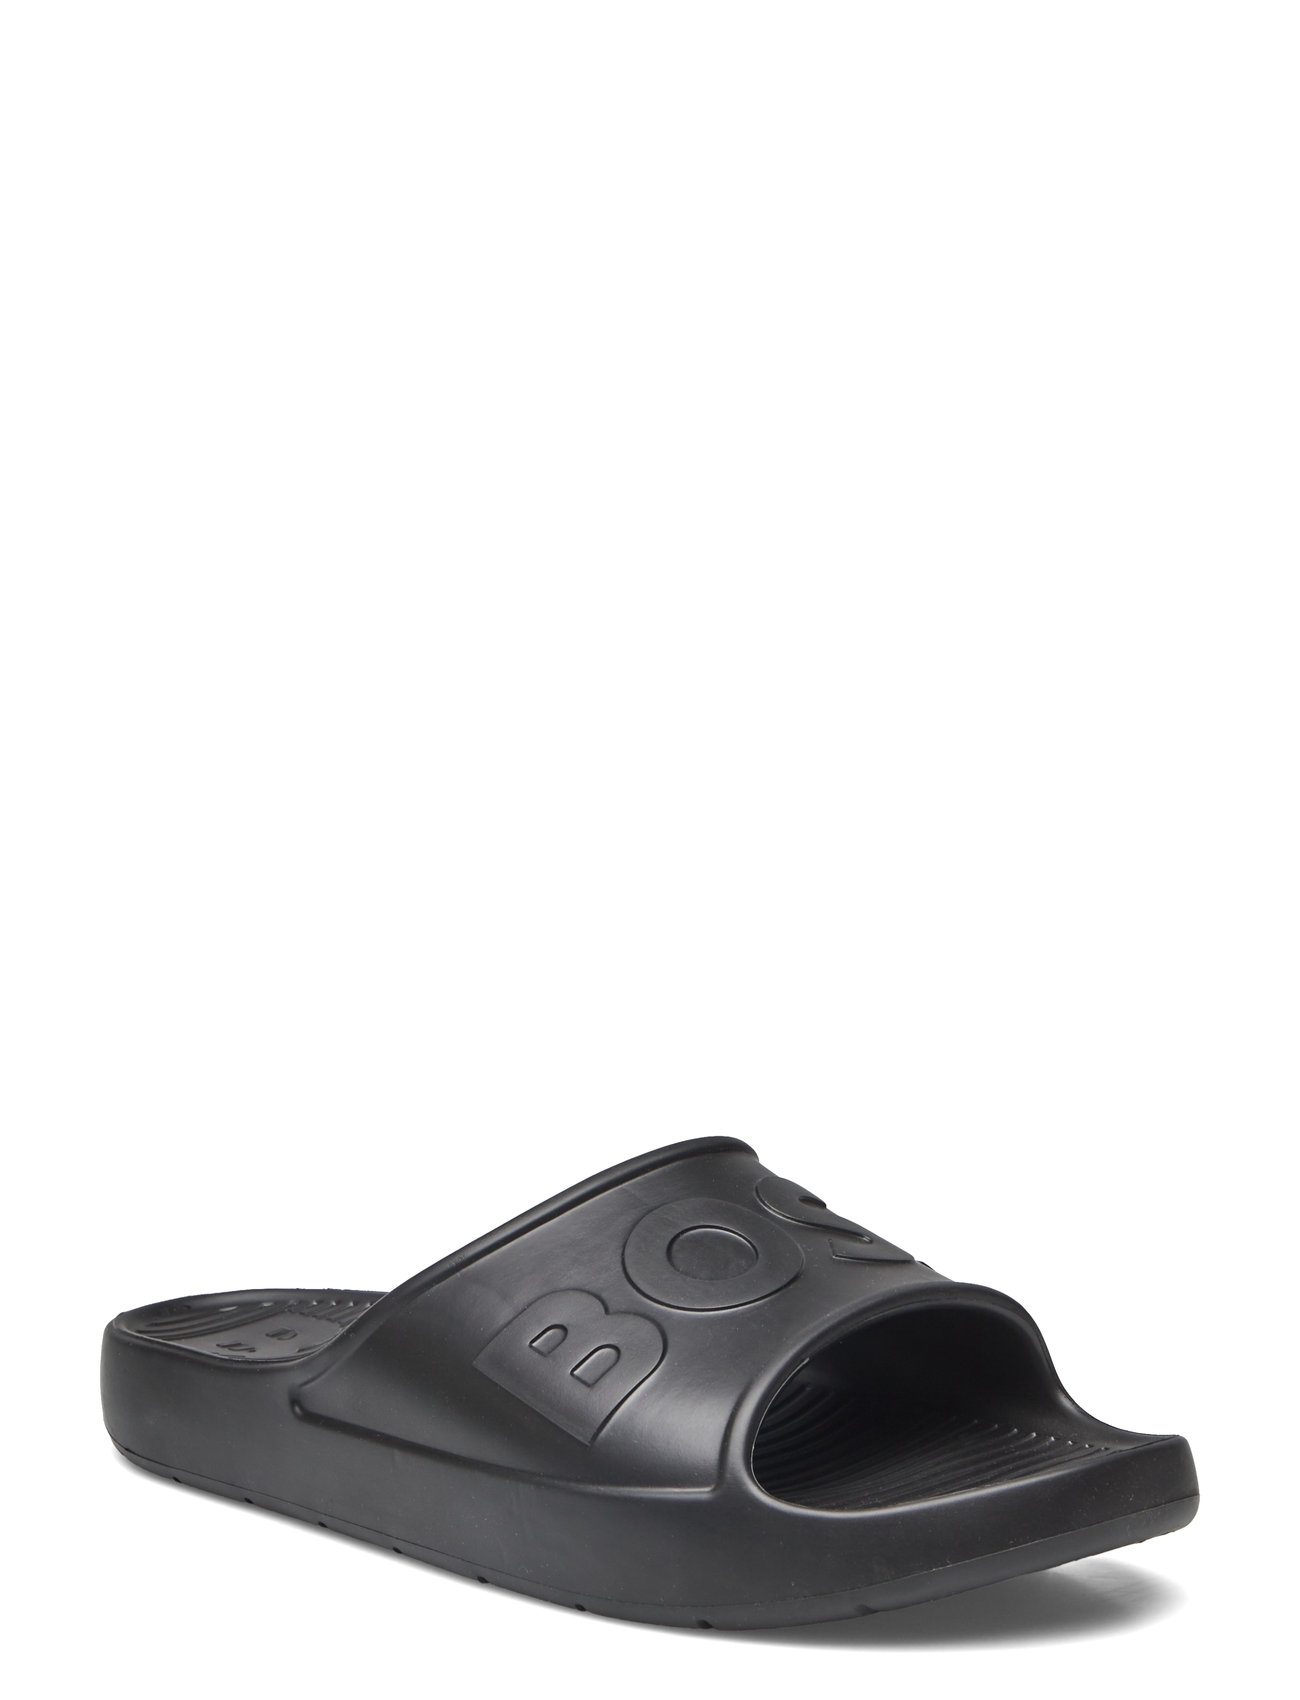 Darian_Slid_Lg_N Shoes Summer Shoes Sandals Pool Sliders Black BOSS